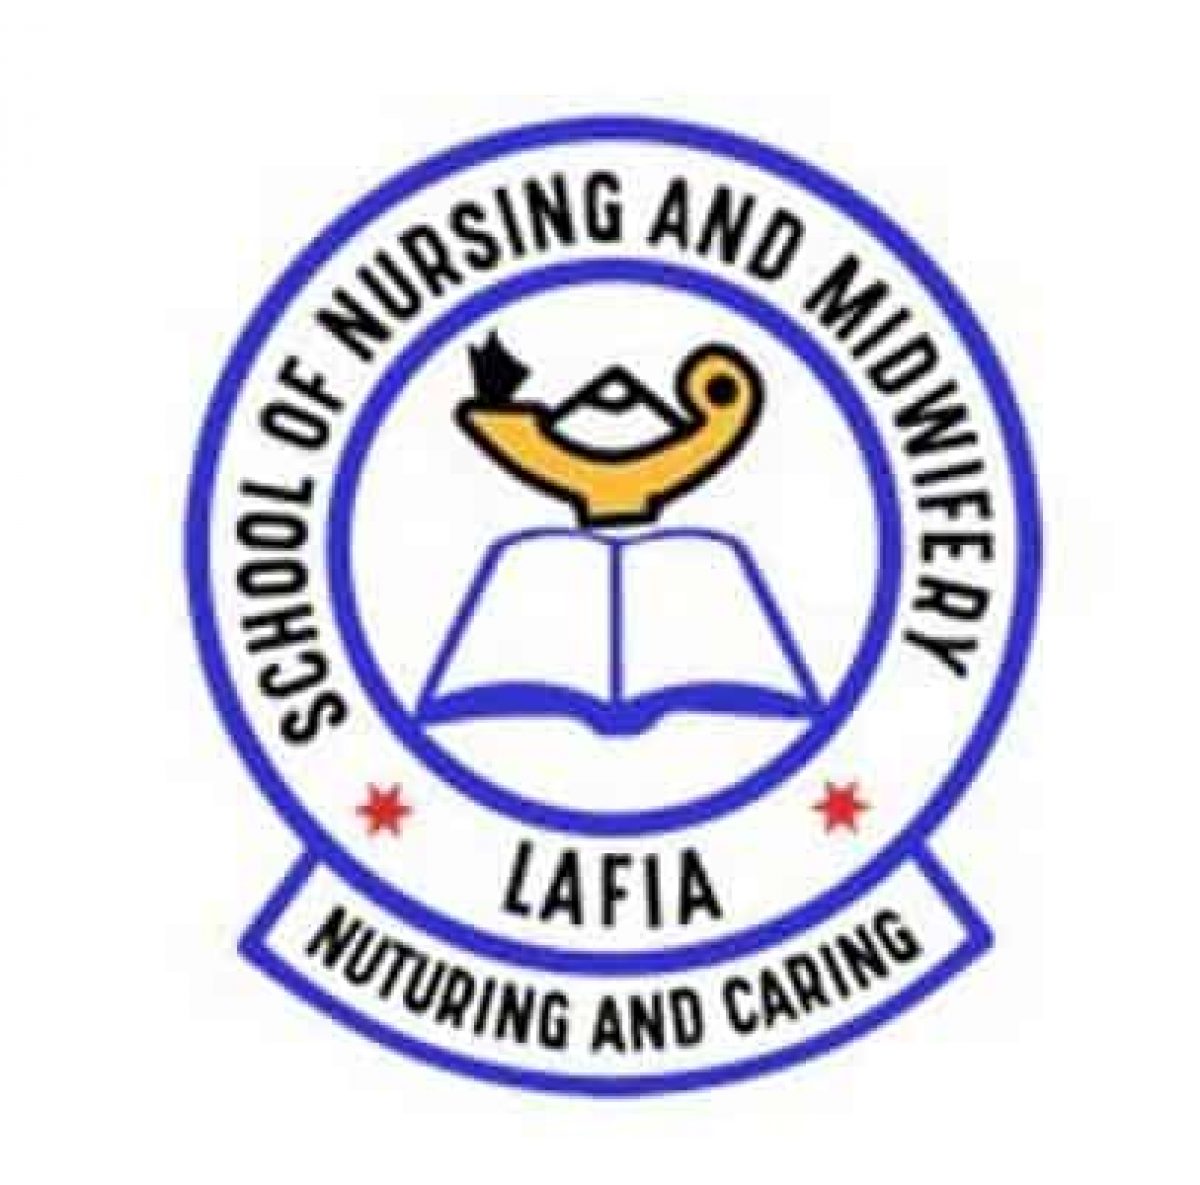 school of nursing lafia logo,school of nursing lafia